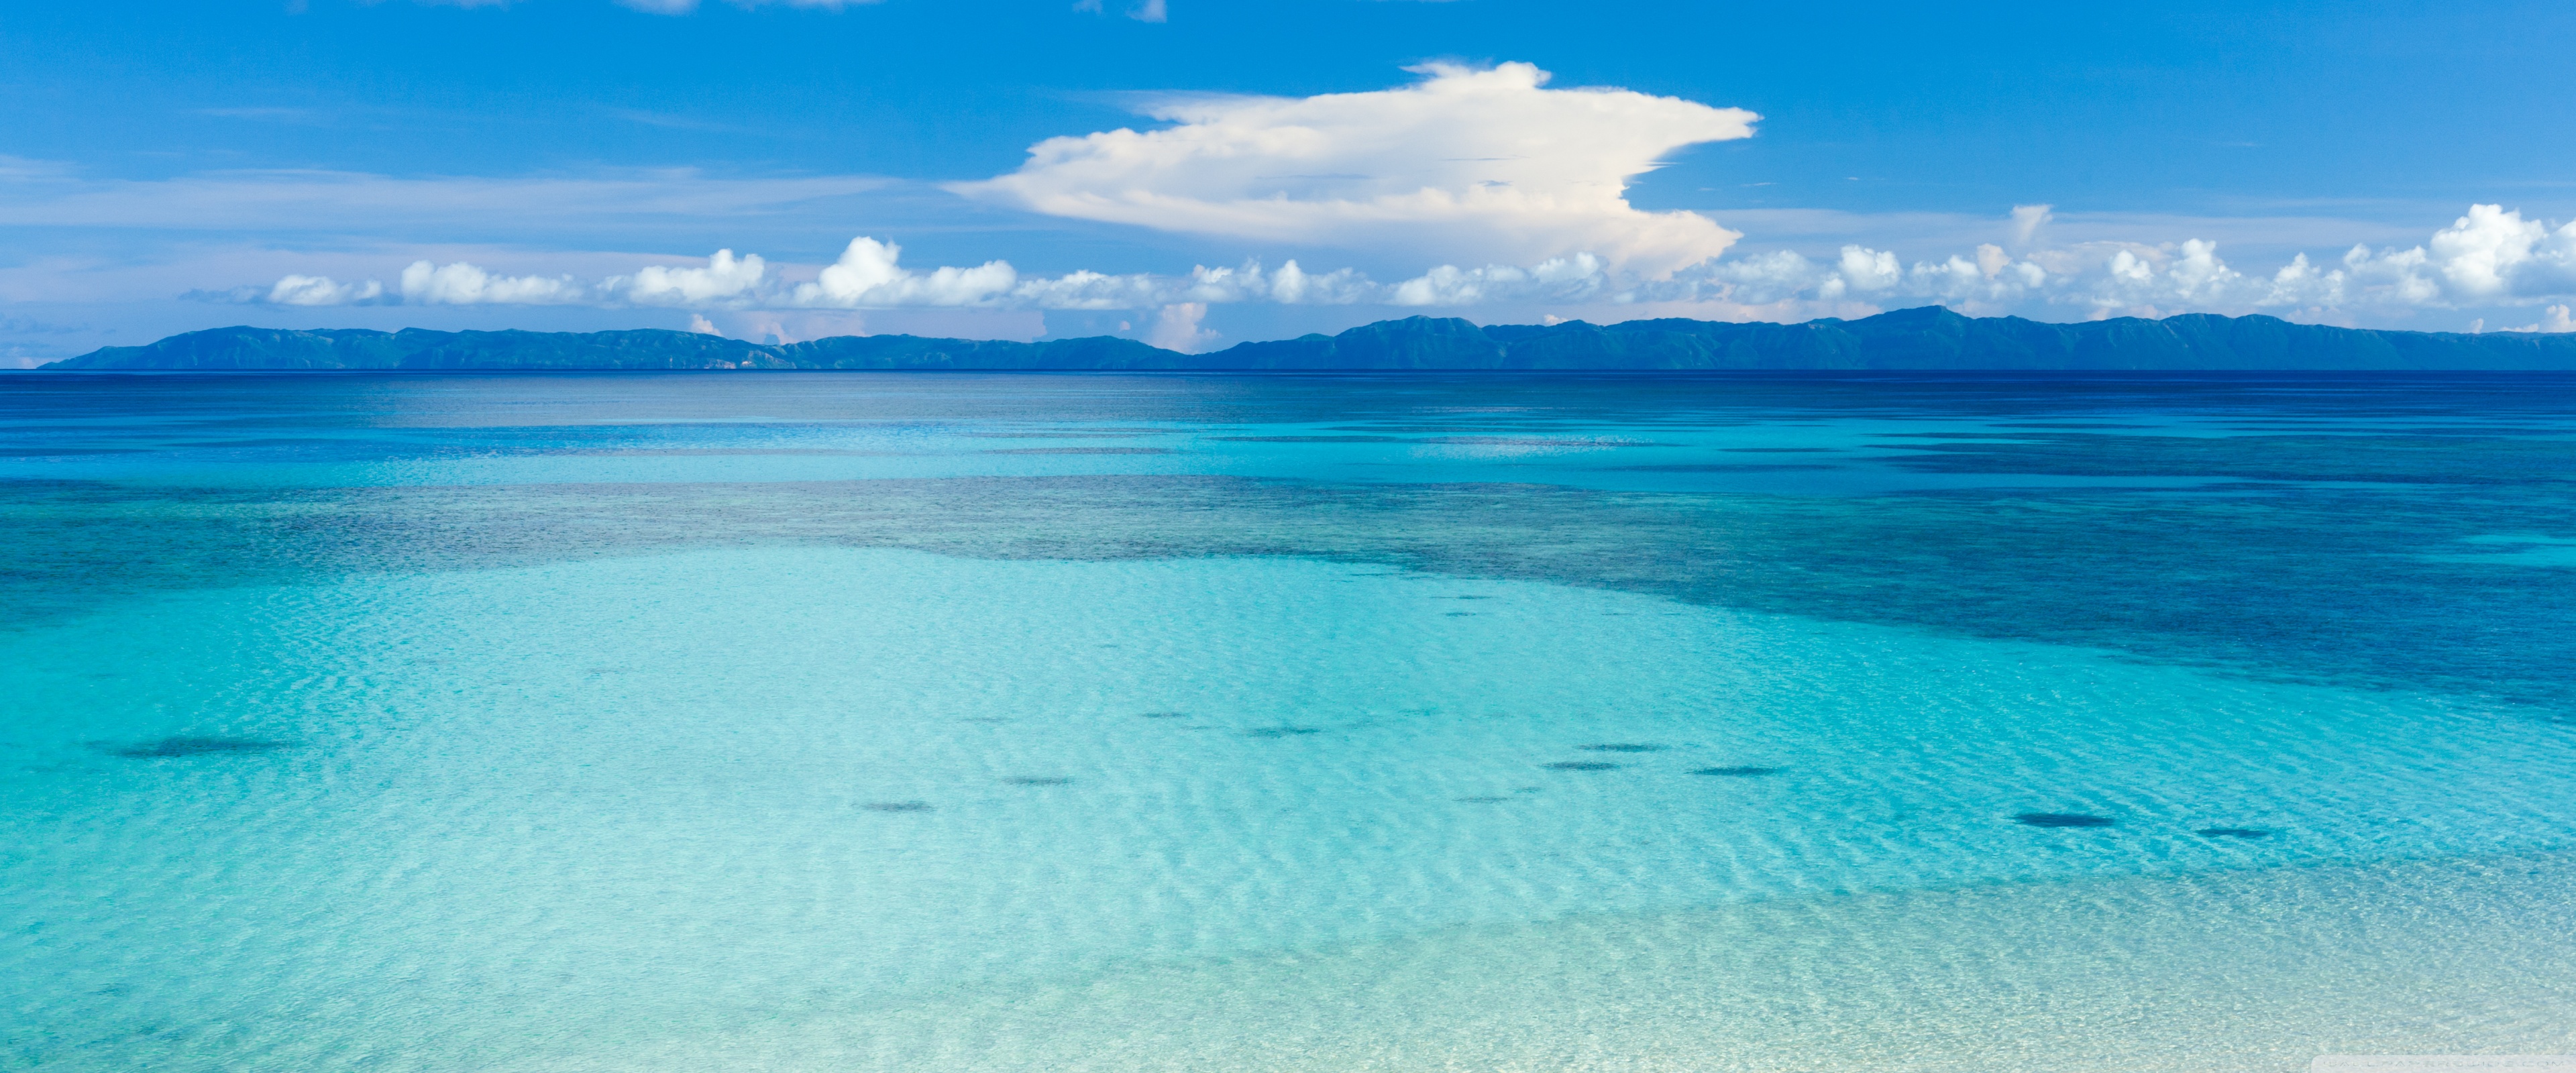 Island Beach Panoramic 4k HD Desktop Wallpaper For